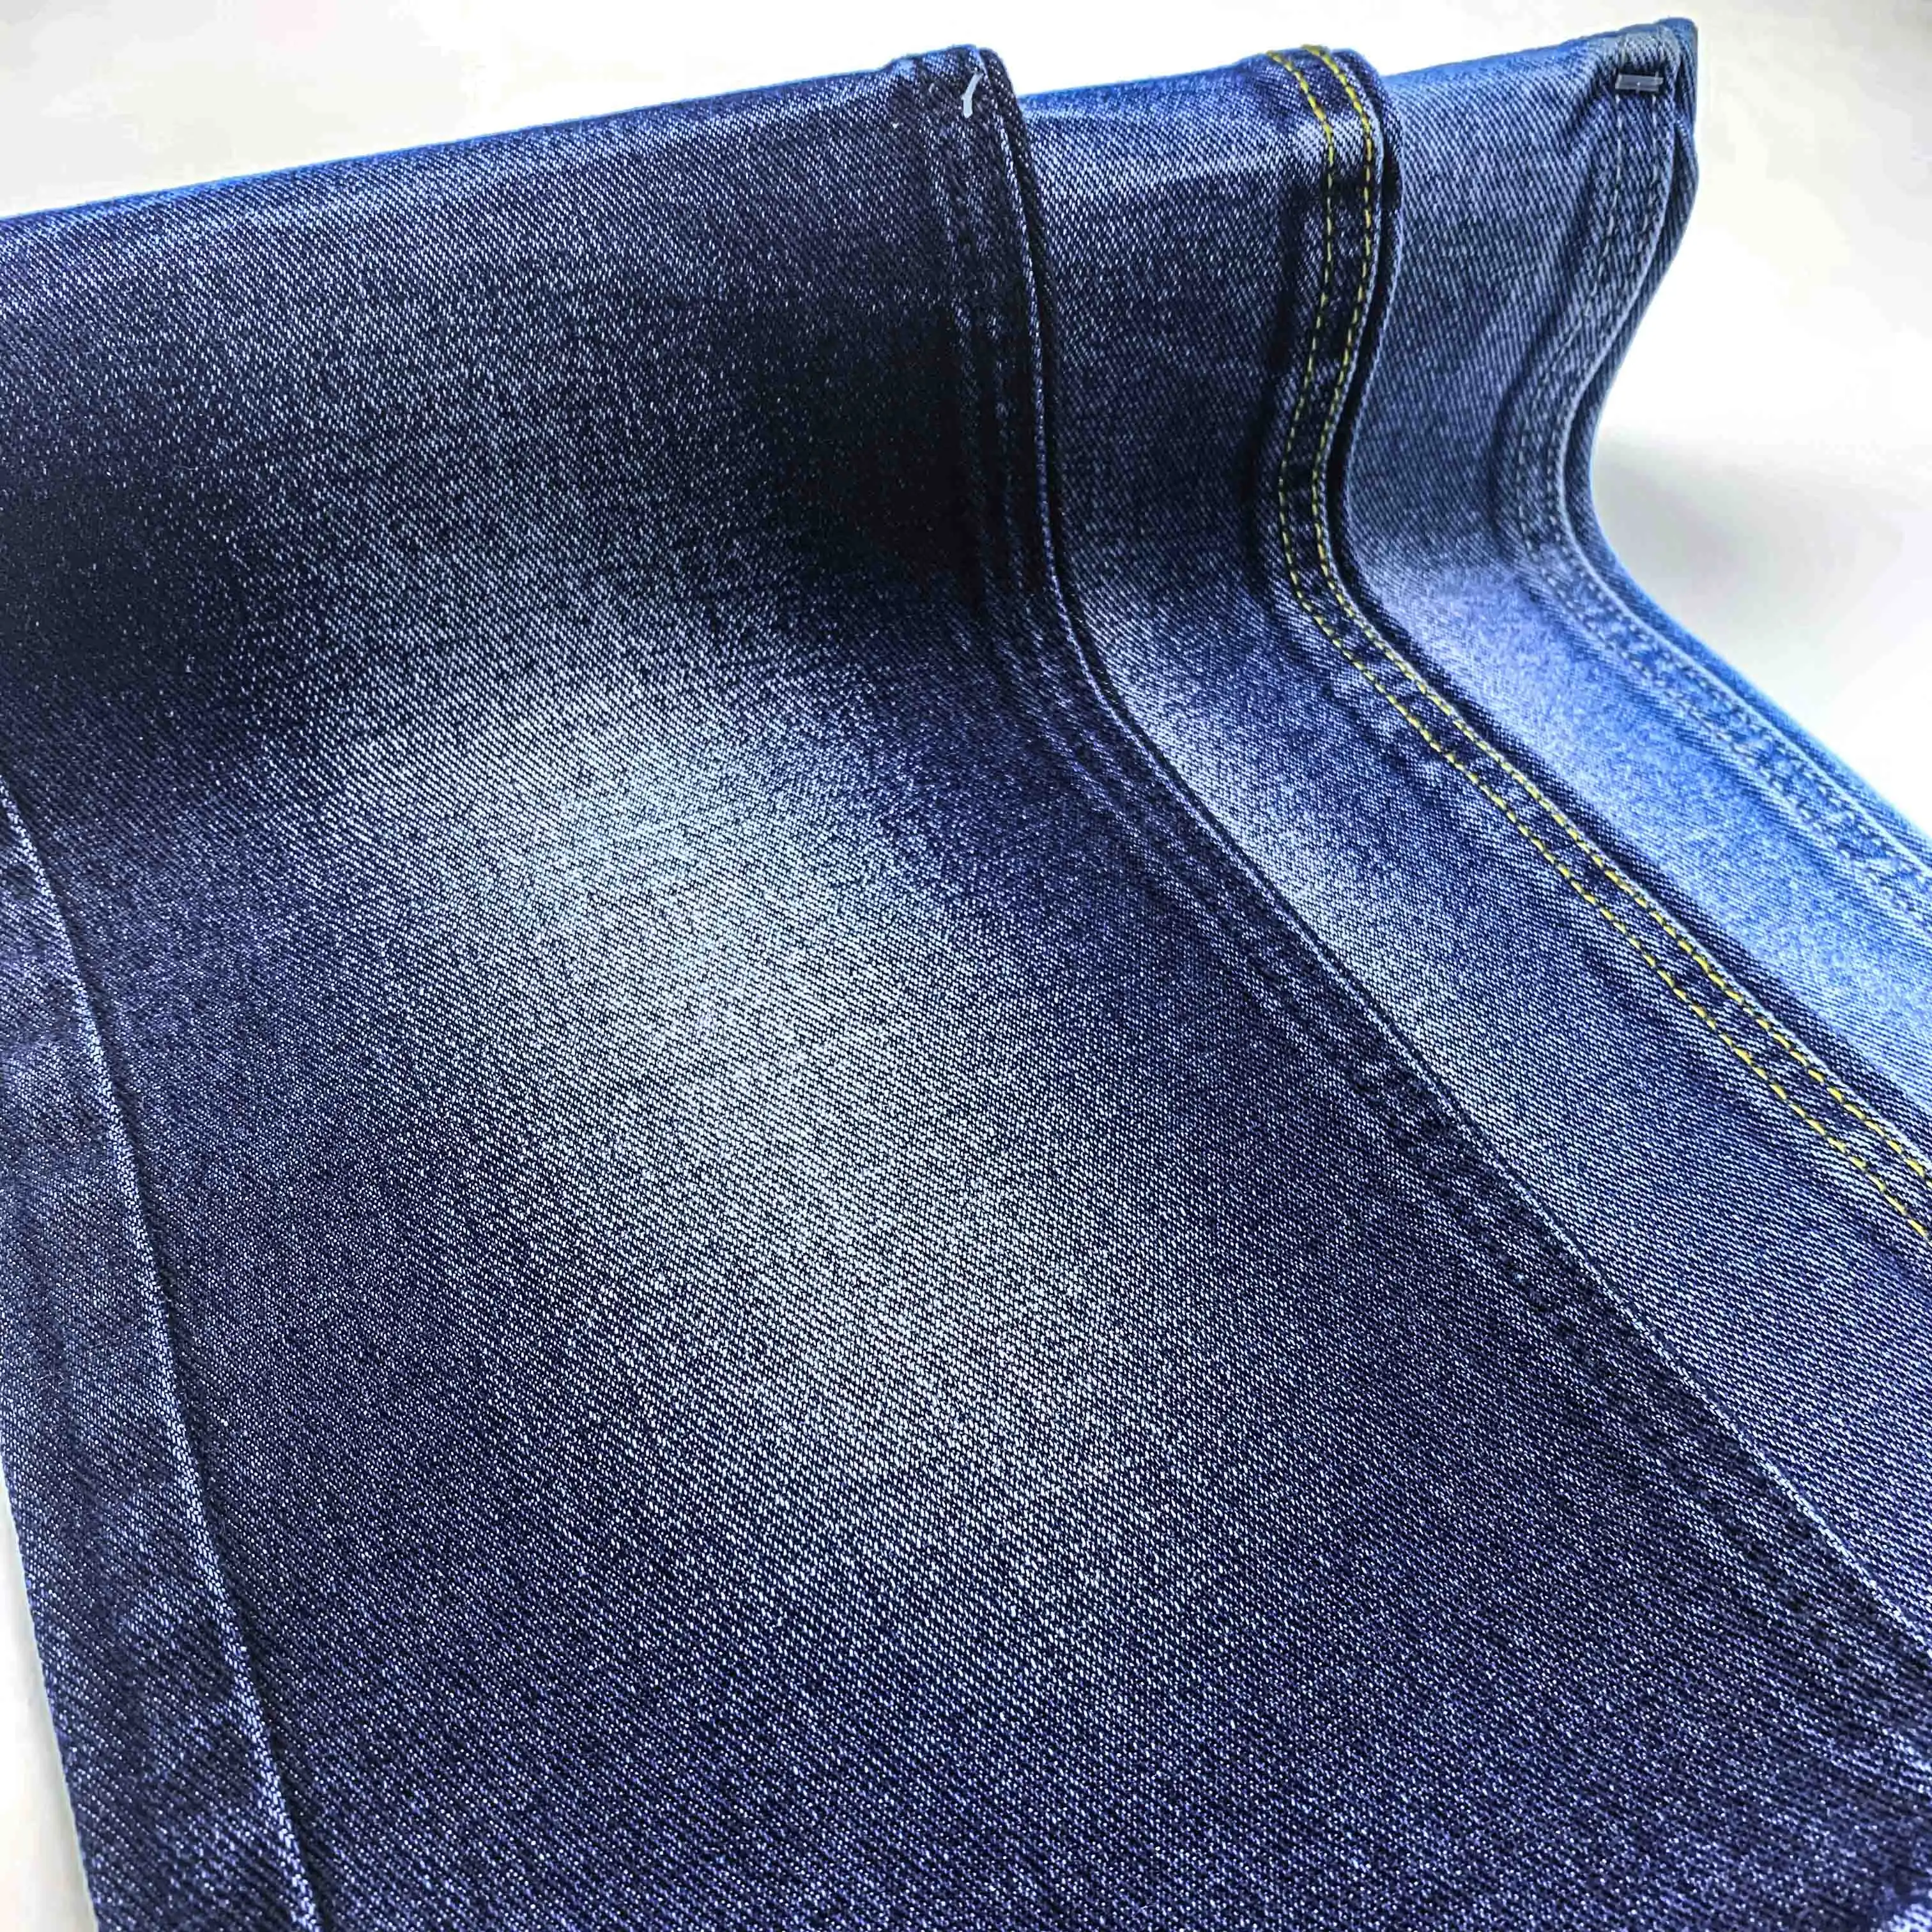 100% algodão 11.5 oz alta peso indigo azul jeans tecido para calças jeans